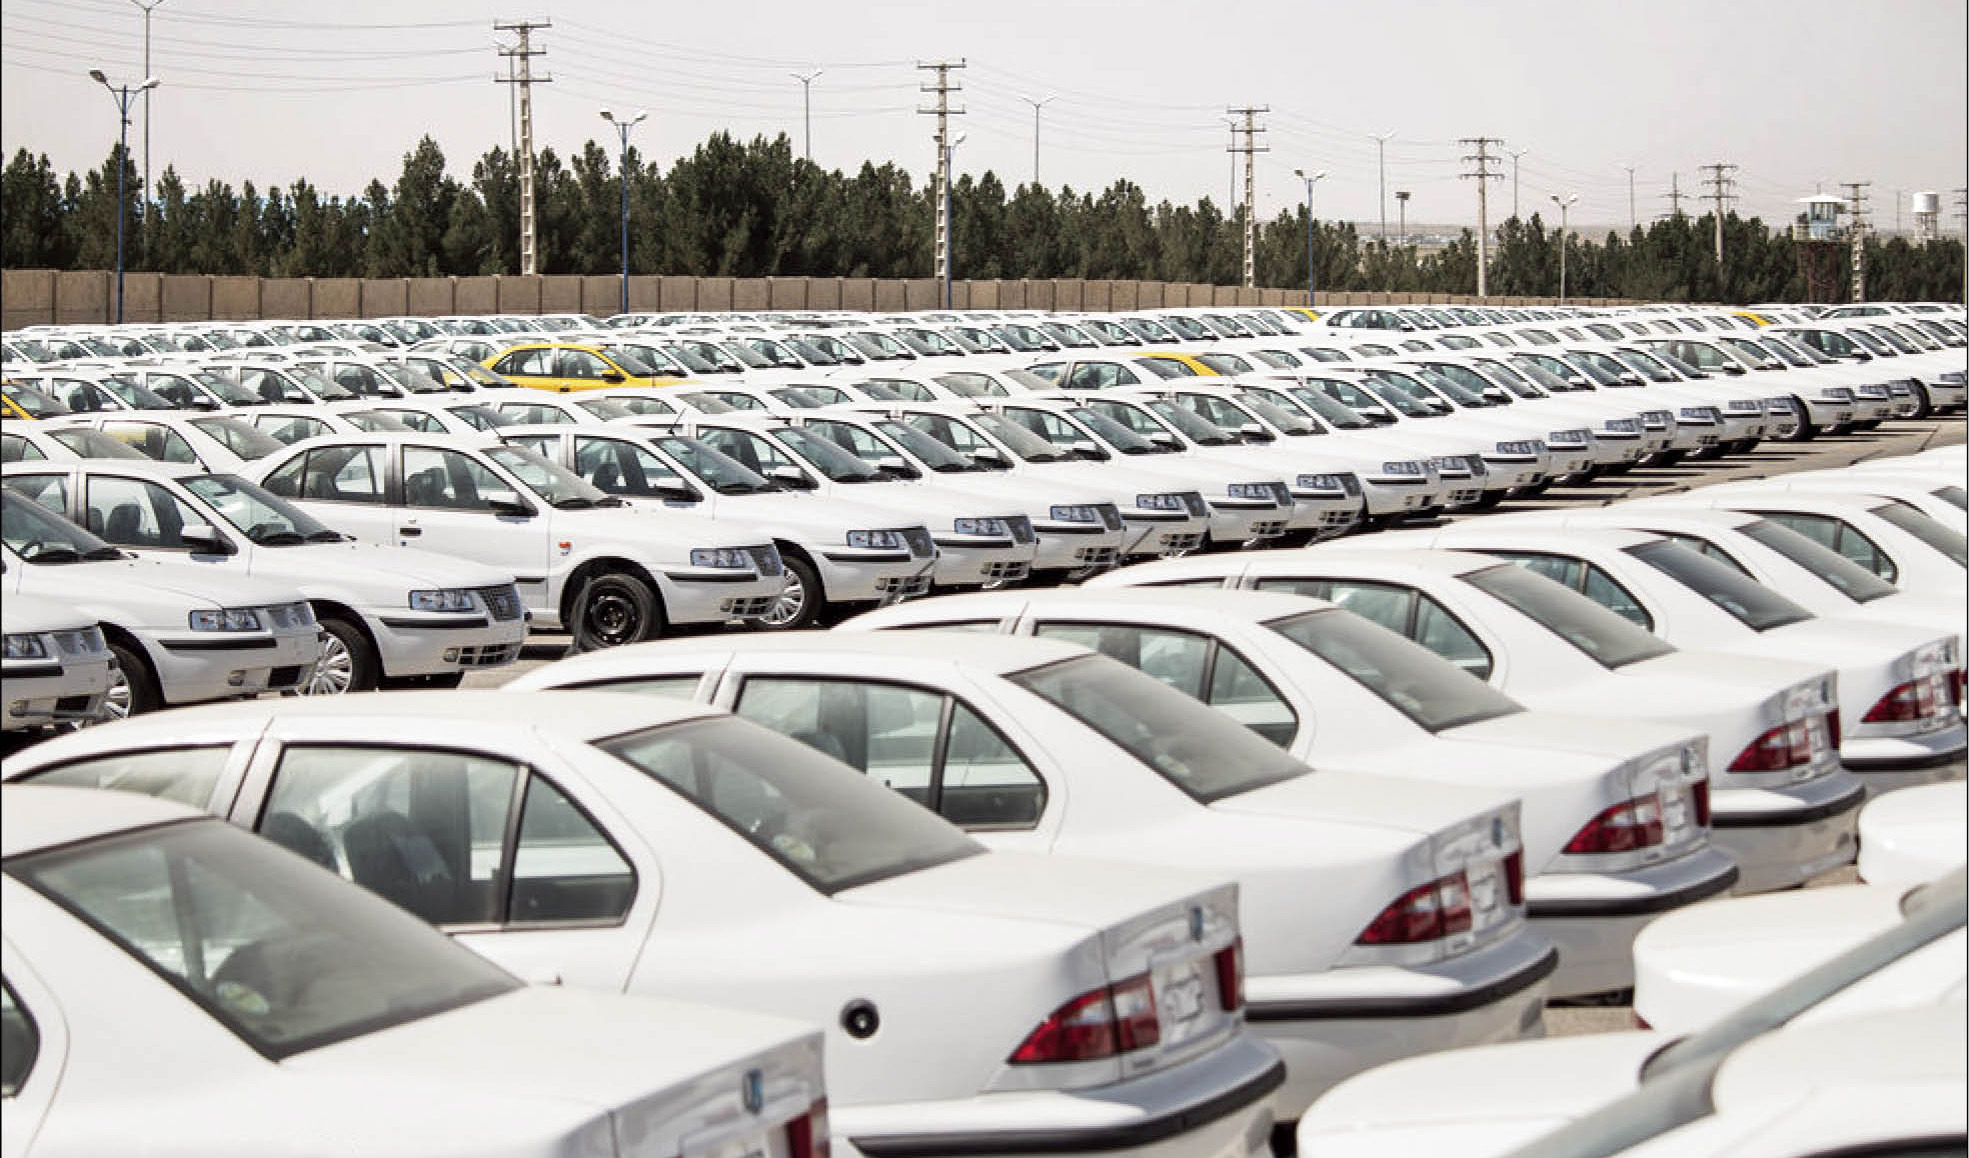 فروش فوری خودروسازان اثری بر نرخ ماشین در بازار ندارد